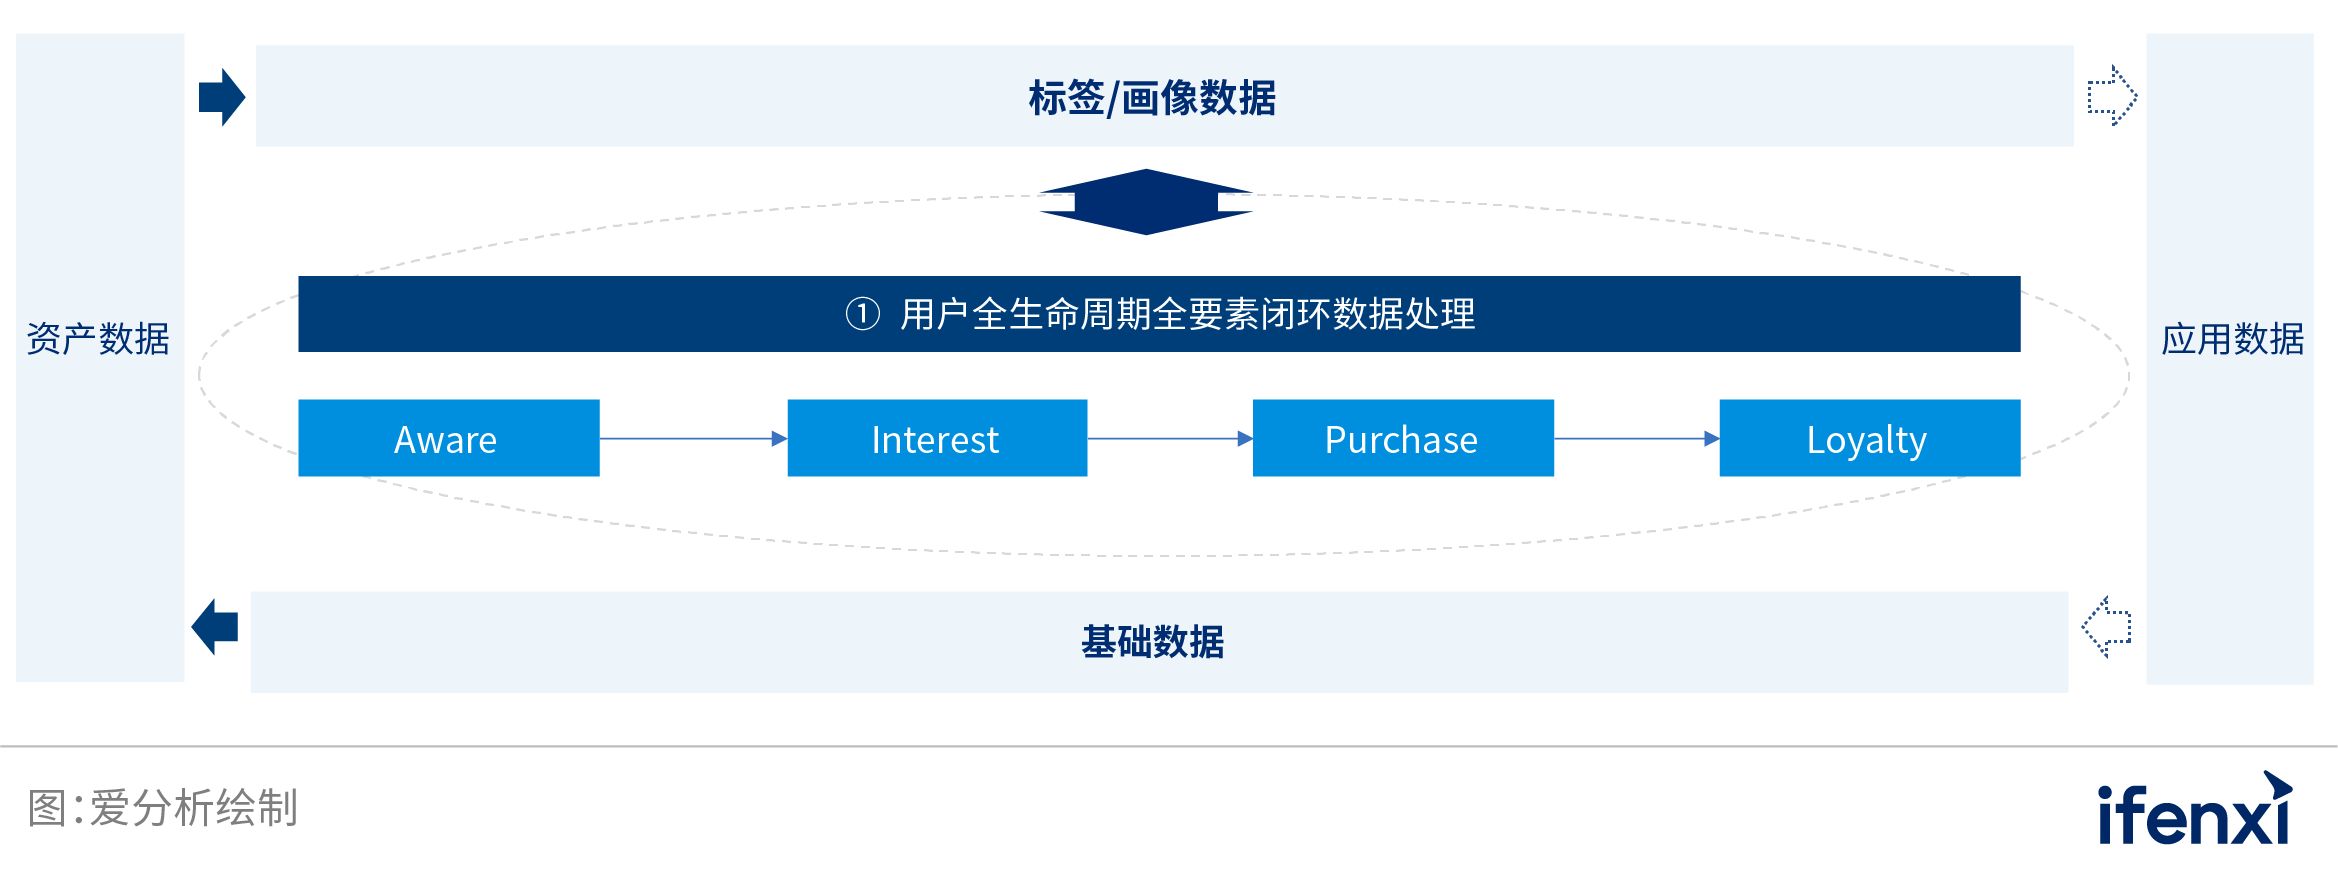 中国业务型CDP白皮书 | 爱分析报告